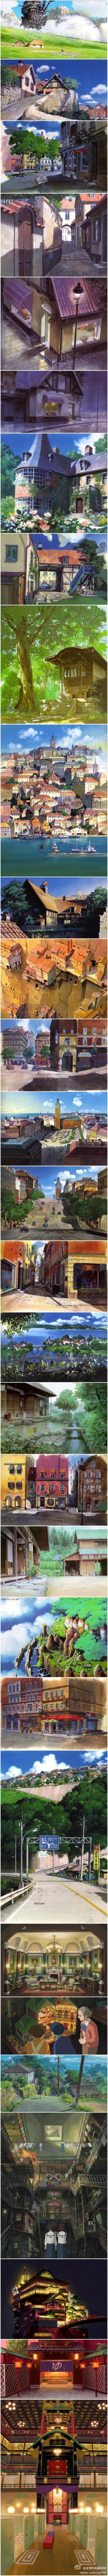 宫崎骏的动漫 总是比真实街景还美丽